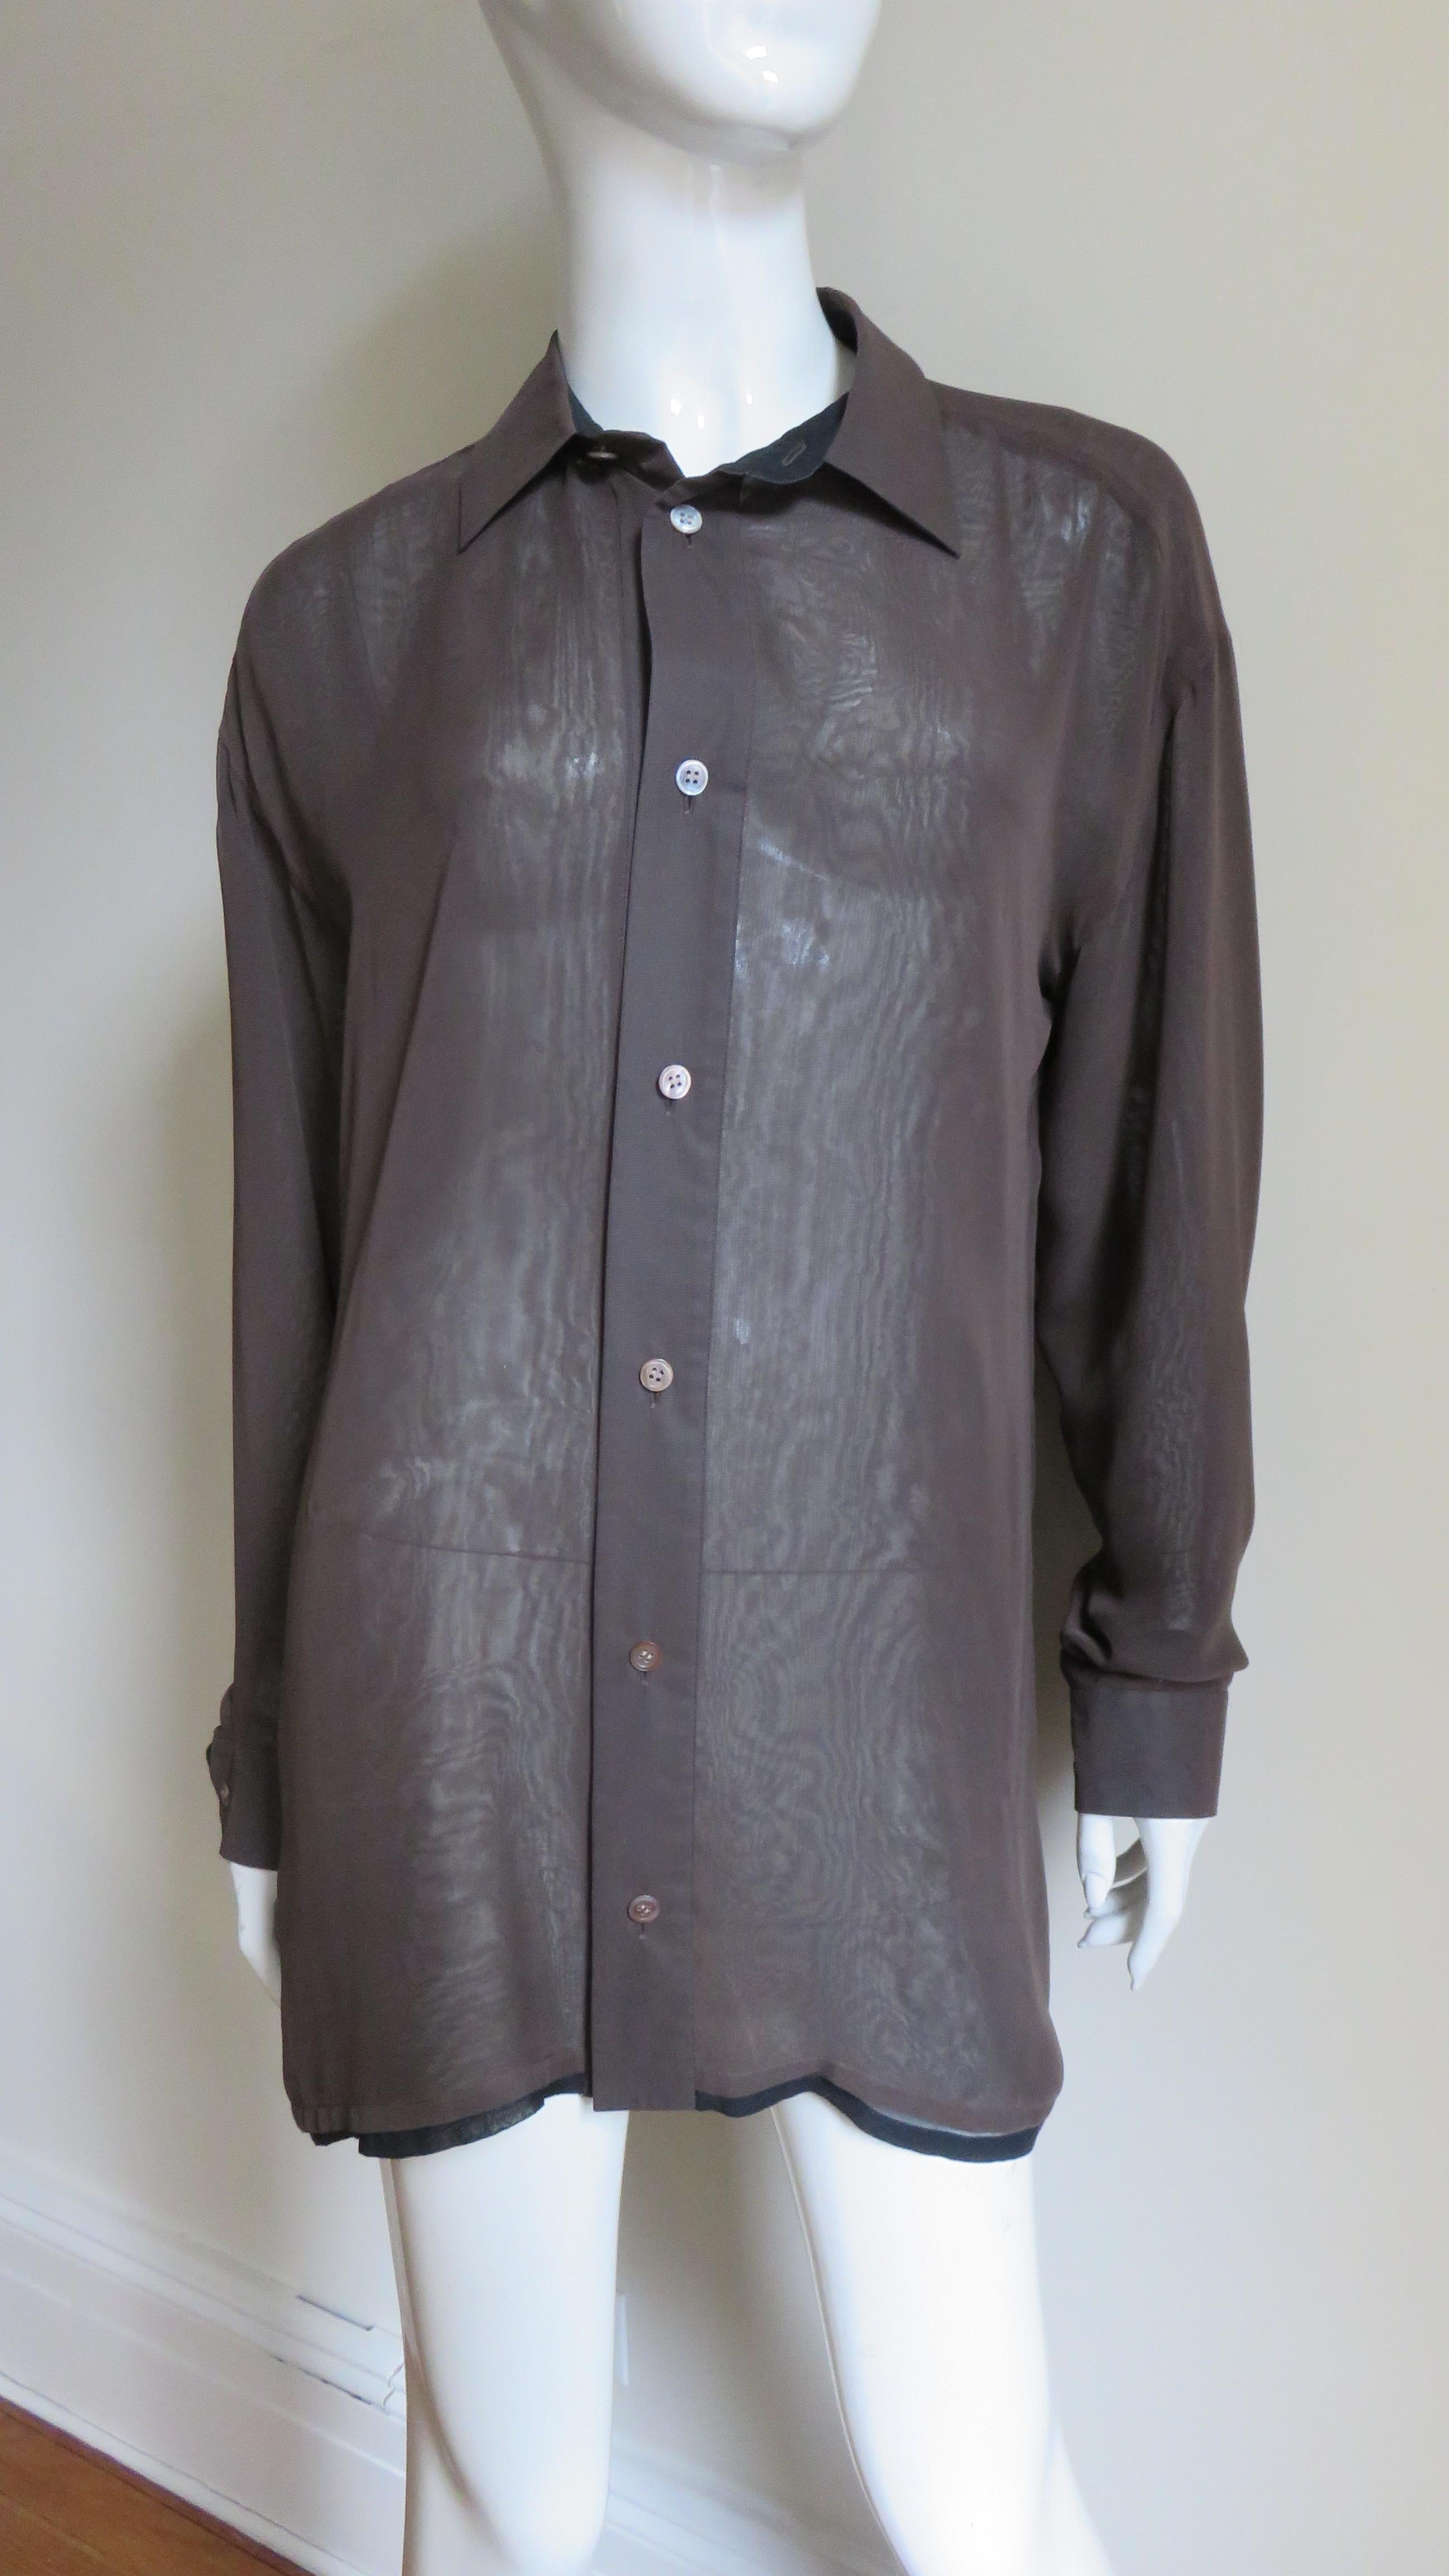 Ein fabelhaftes 2-lagiges Hemd von Issey Miyake.  Es besteht aus 2 halbdurchsichtigen Schichten, einer schwarzen Schicht und einer braunen Schicht darüber, wobei die schwarze Schicht am Saum herausschaut.  Es hat einen Hemdkragen, eine Rückenpasse